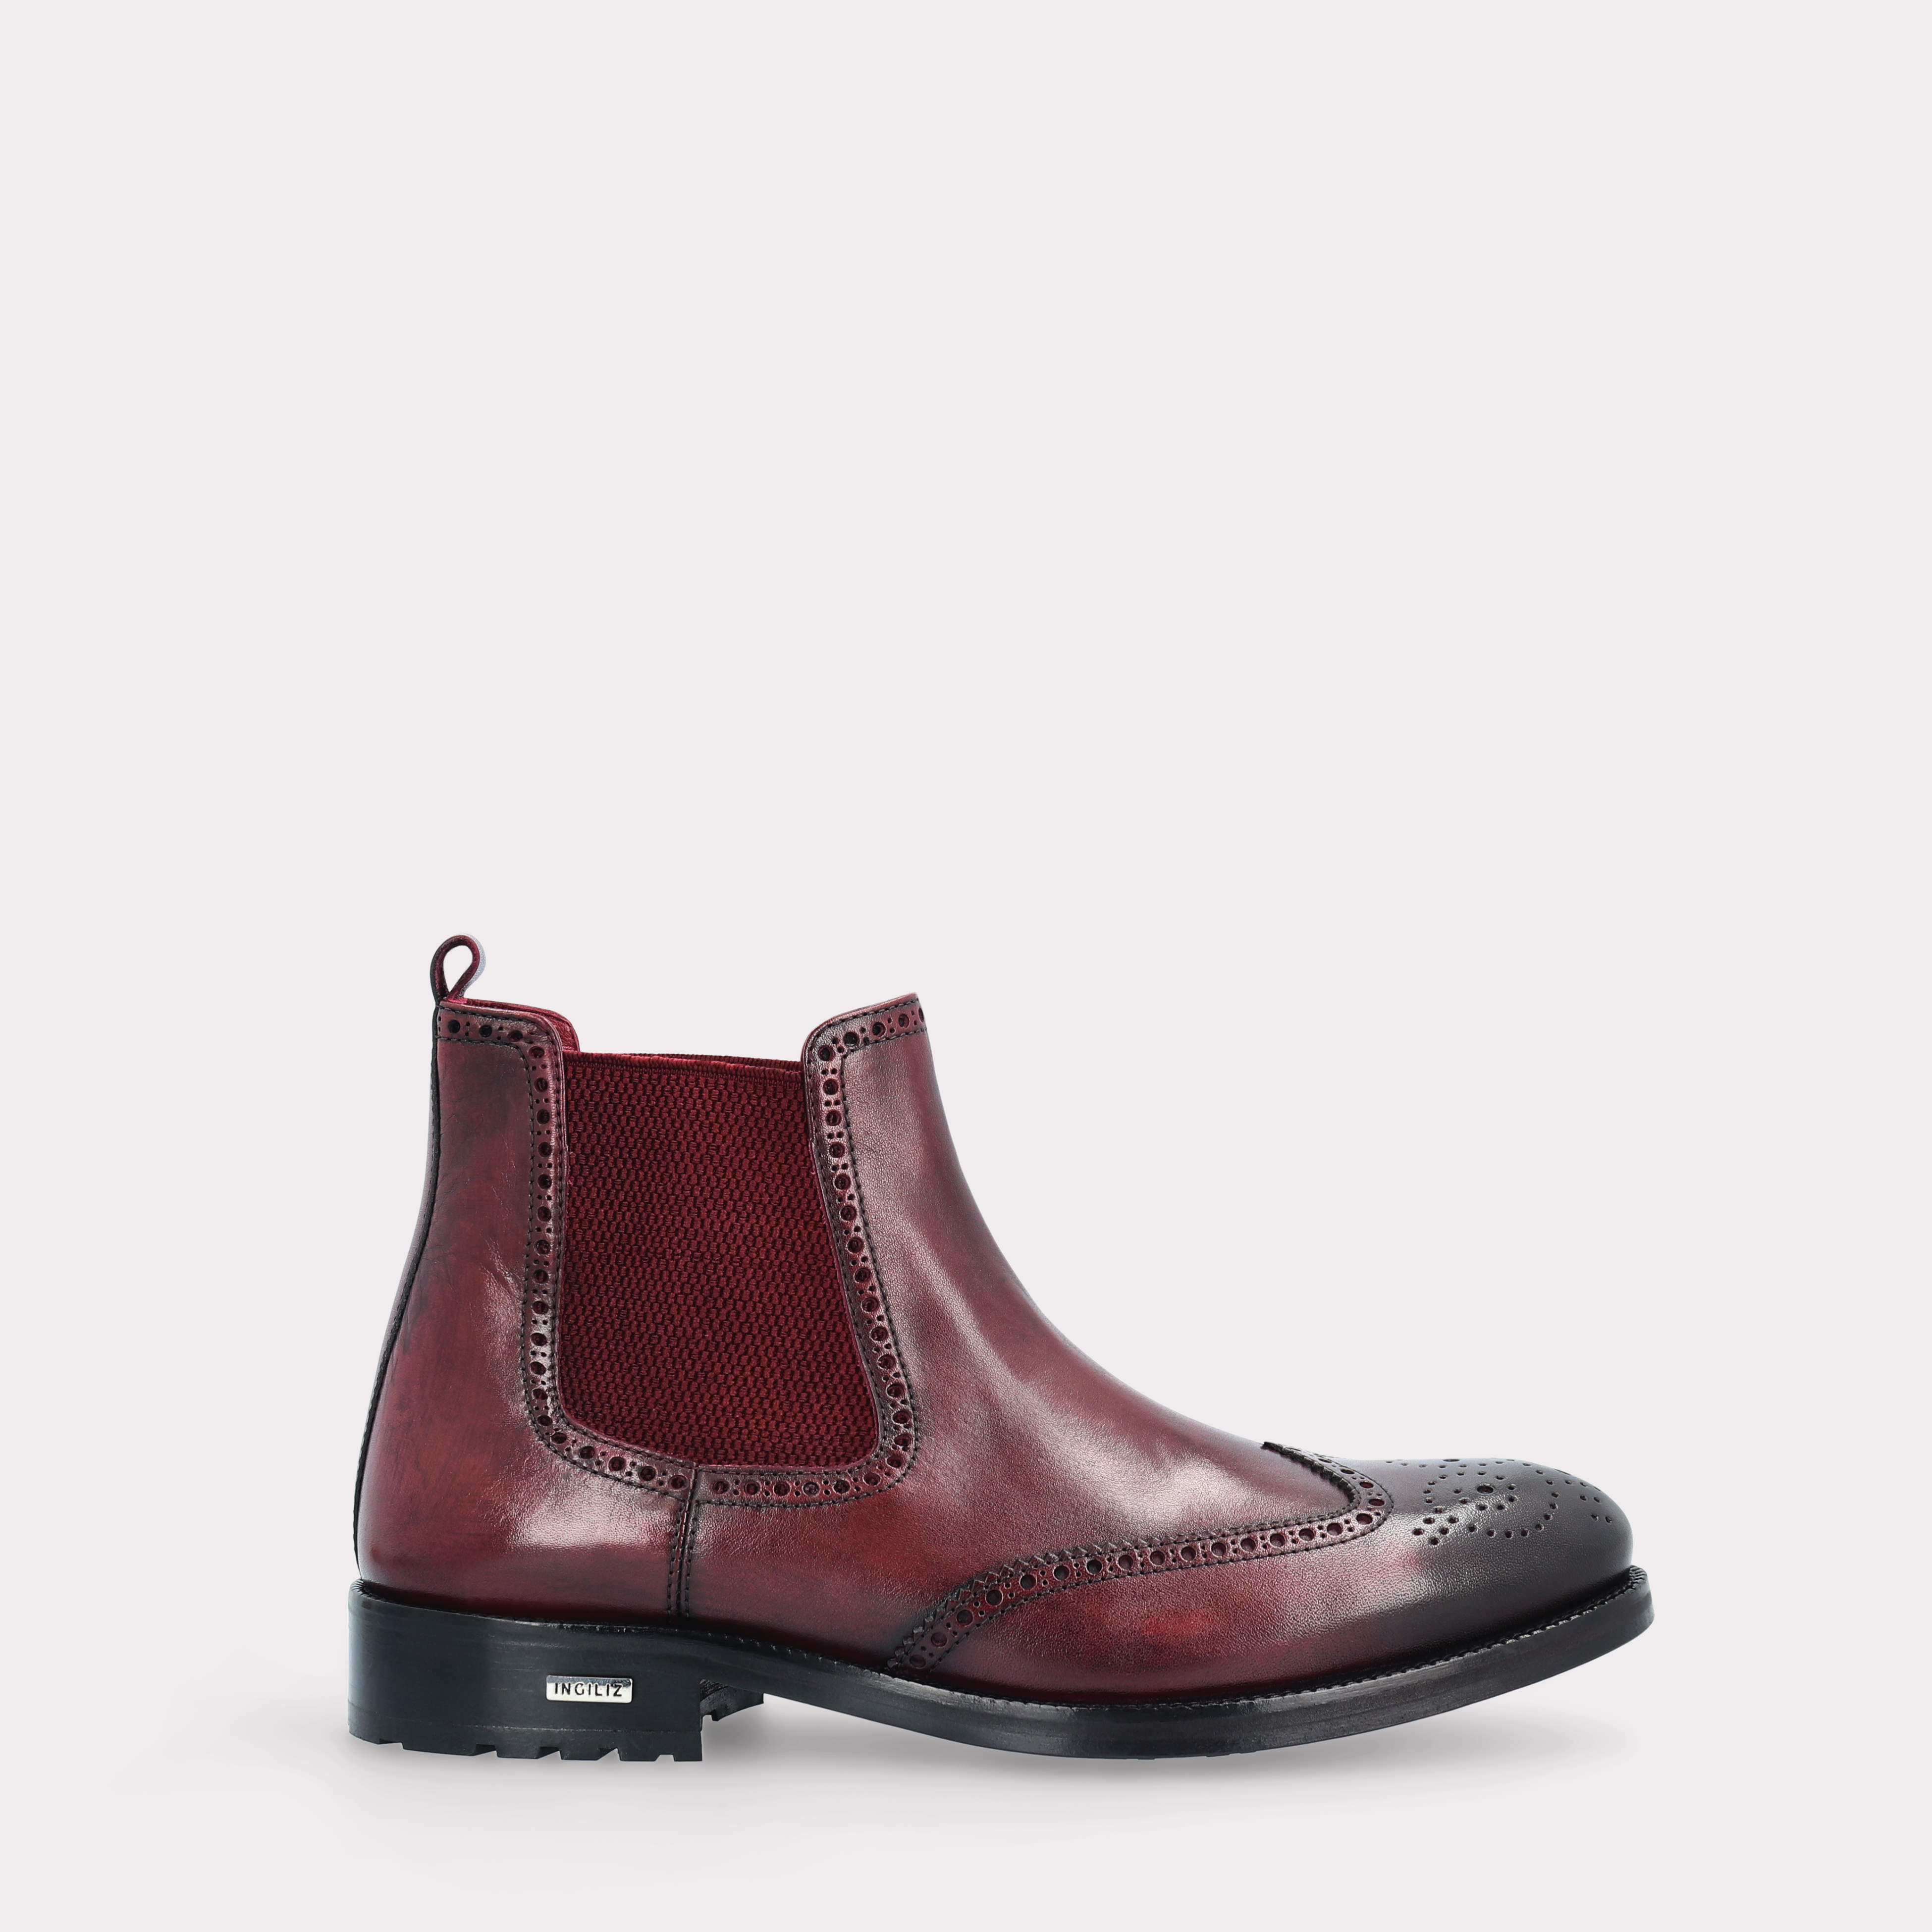 MODENA 01 bordeaux leather chelsea boots with bordeaux elastic